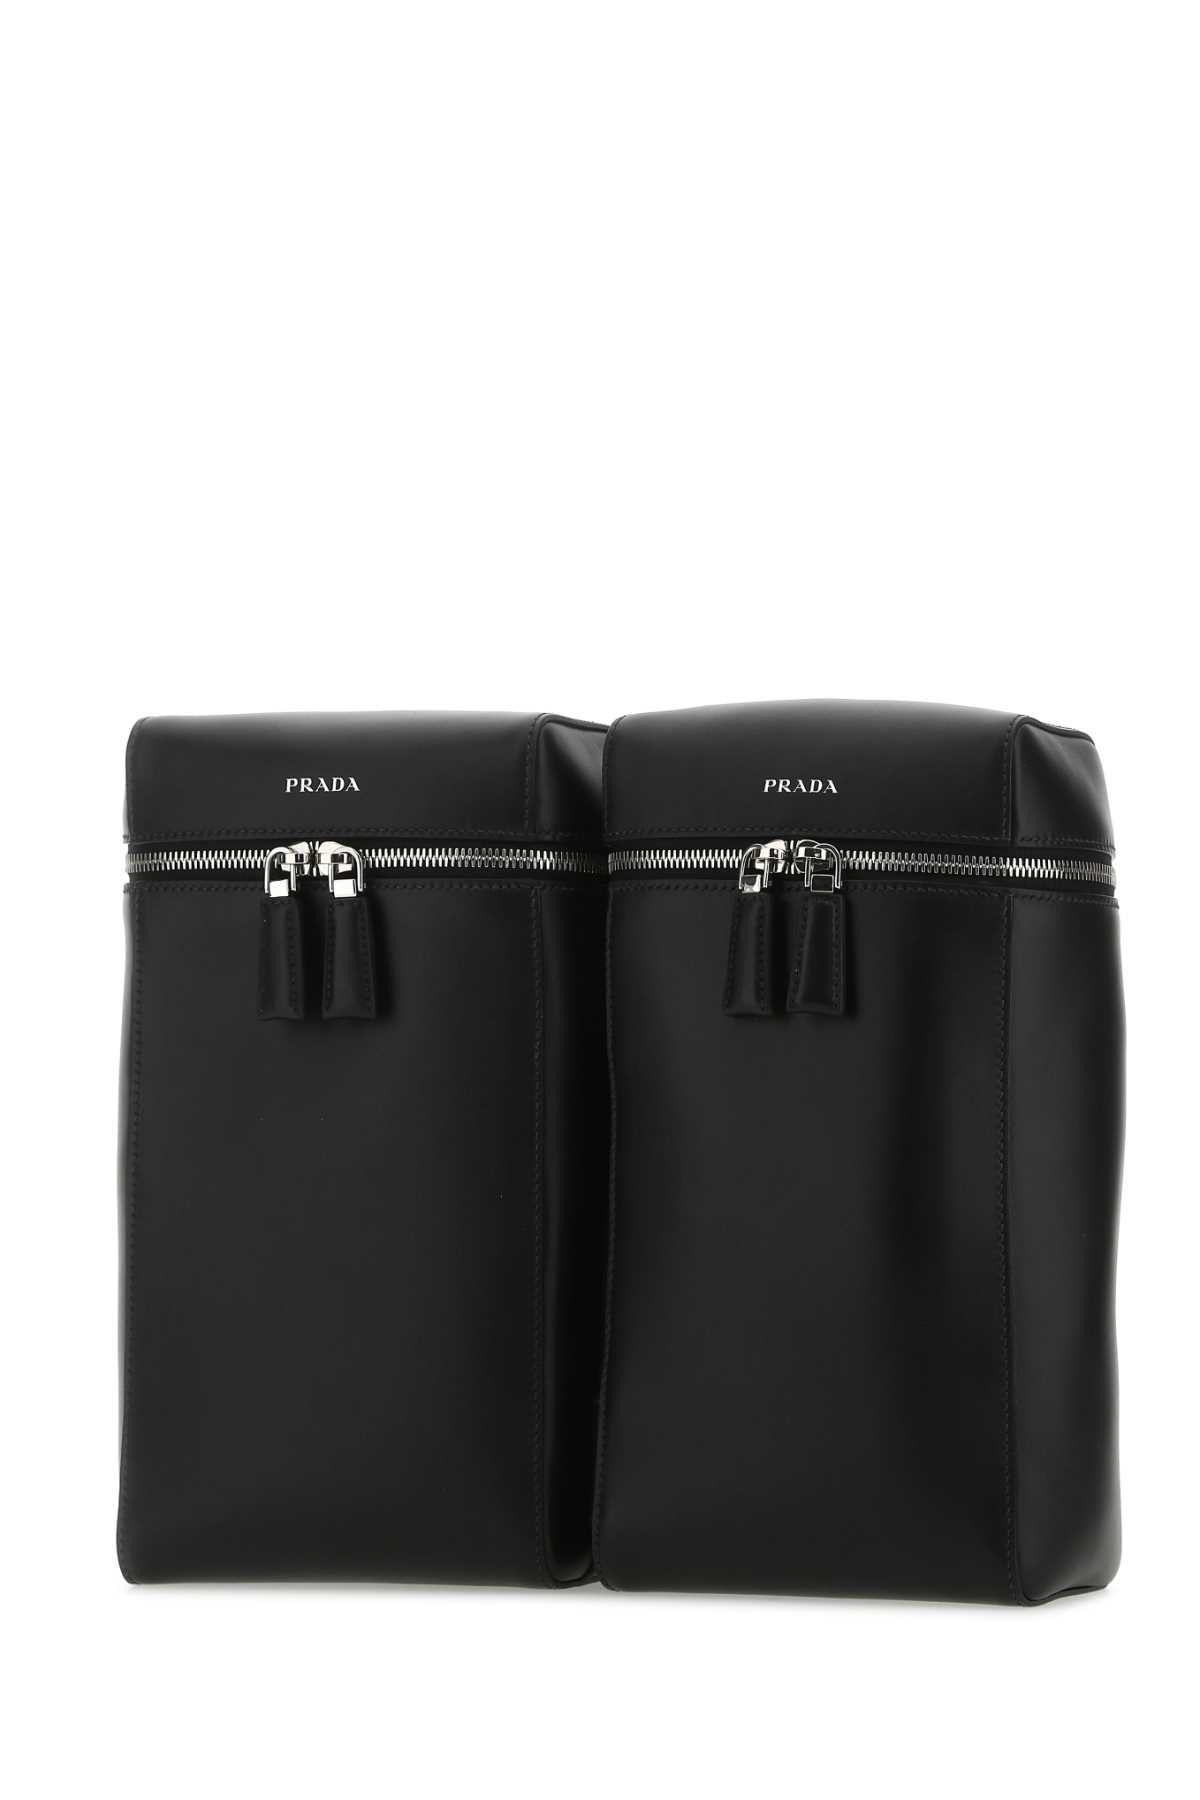 Prada Black Leather Backpack In F0002